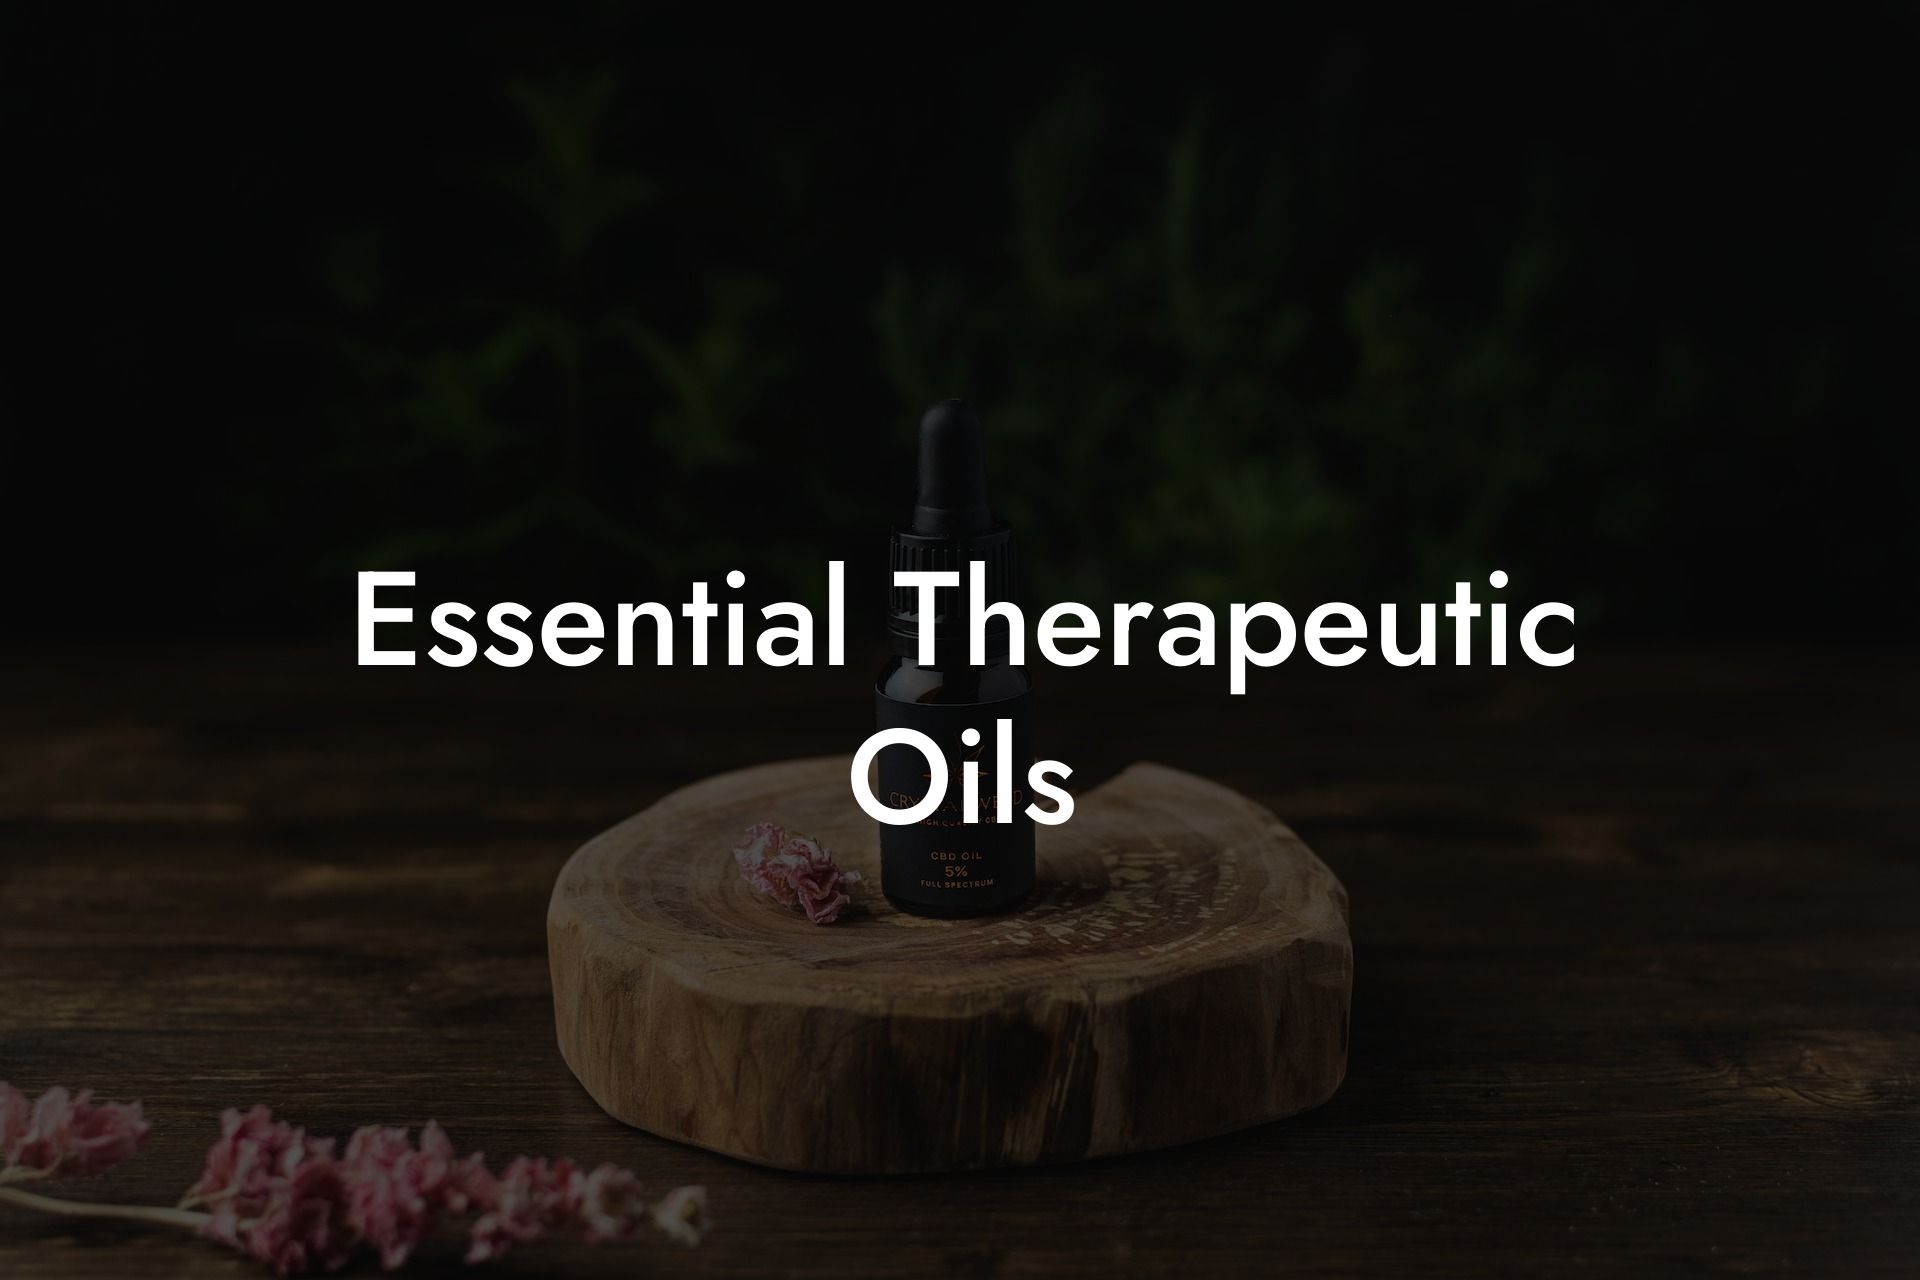 Essential Therapeutic Oils